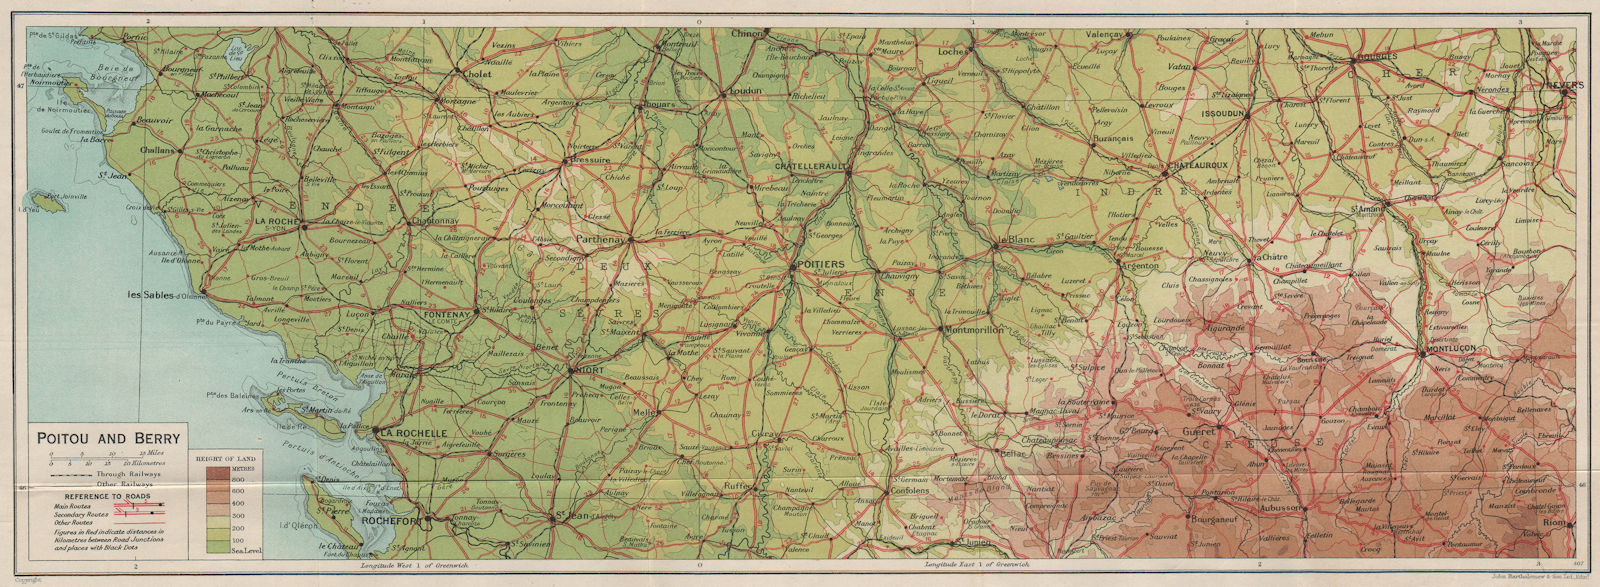 POITOU-CHARENTES & BERRY. Vendee La Rochelle Limousin Poitiers. Vintage map 1926